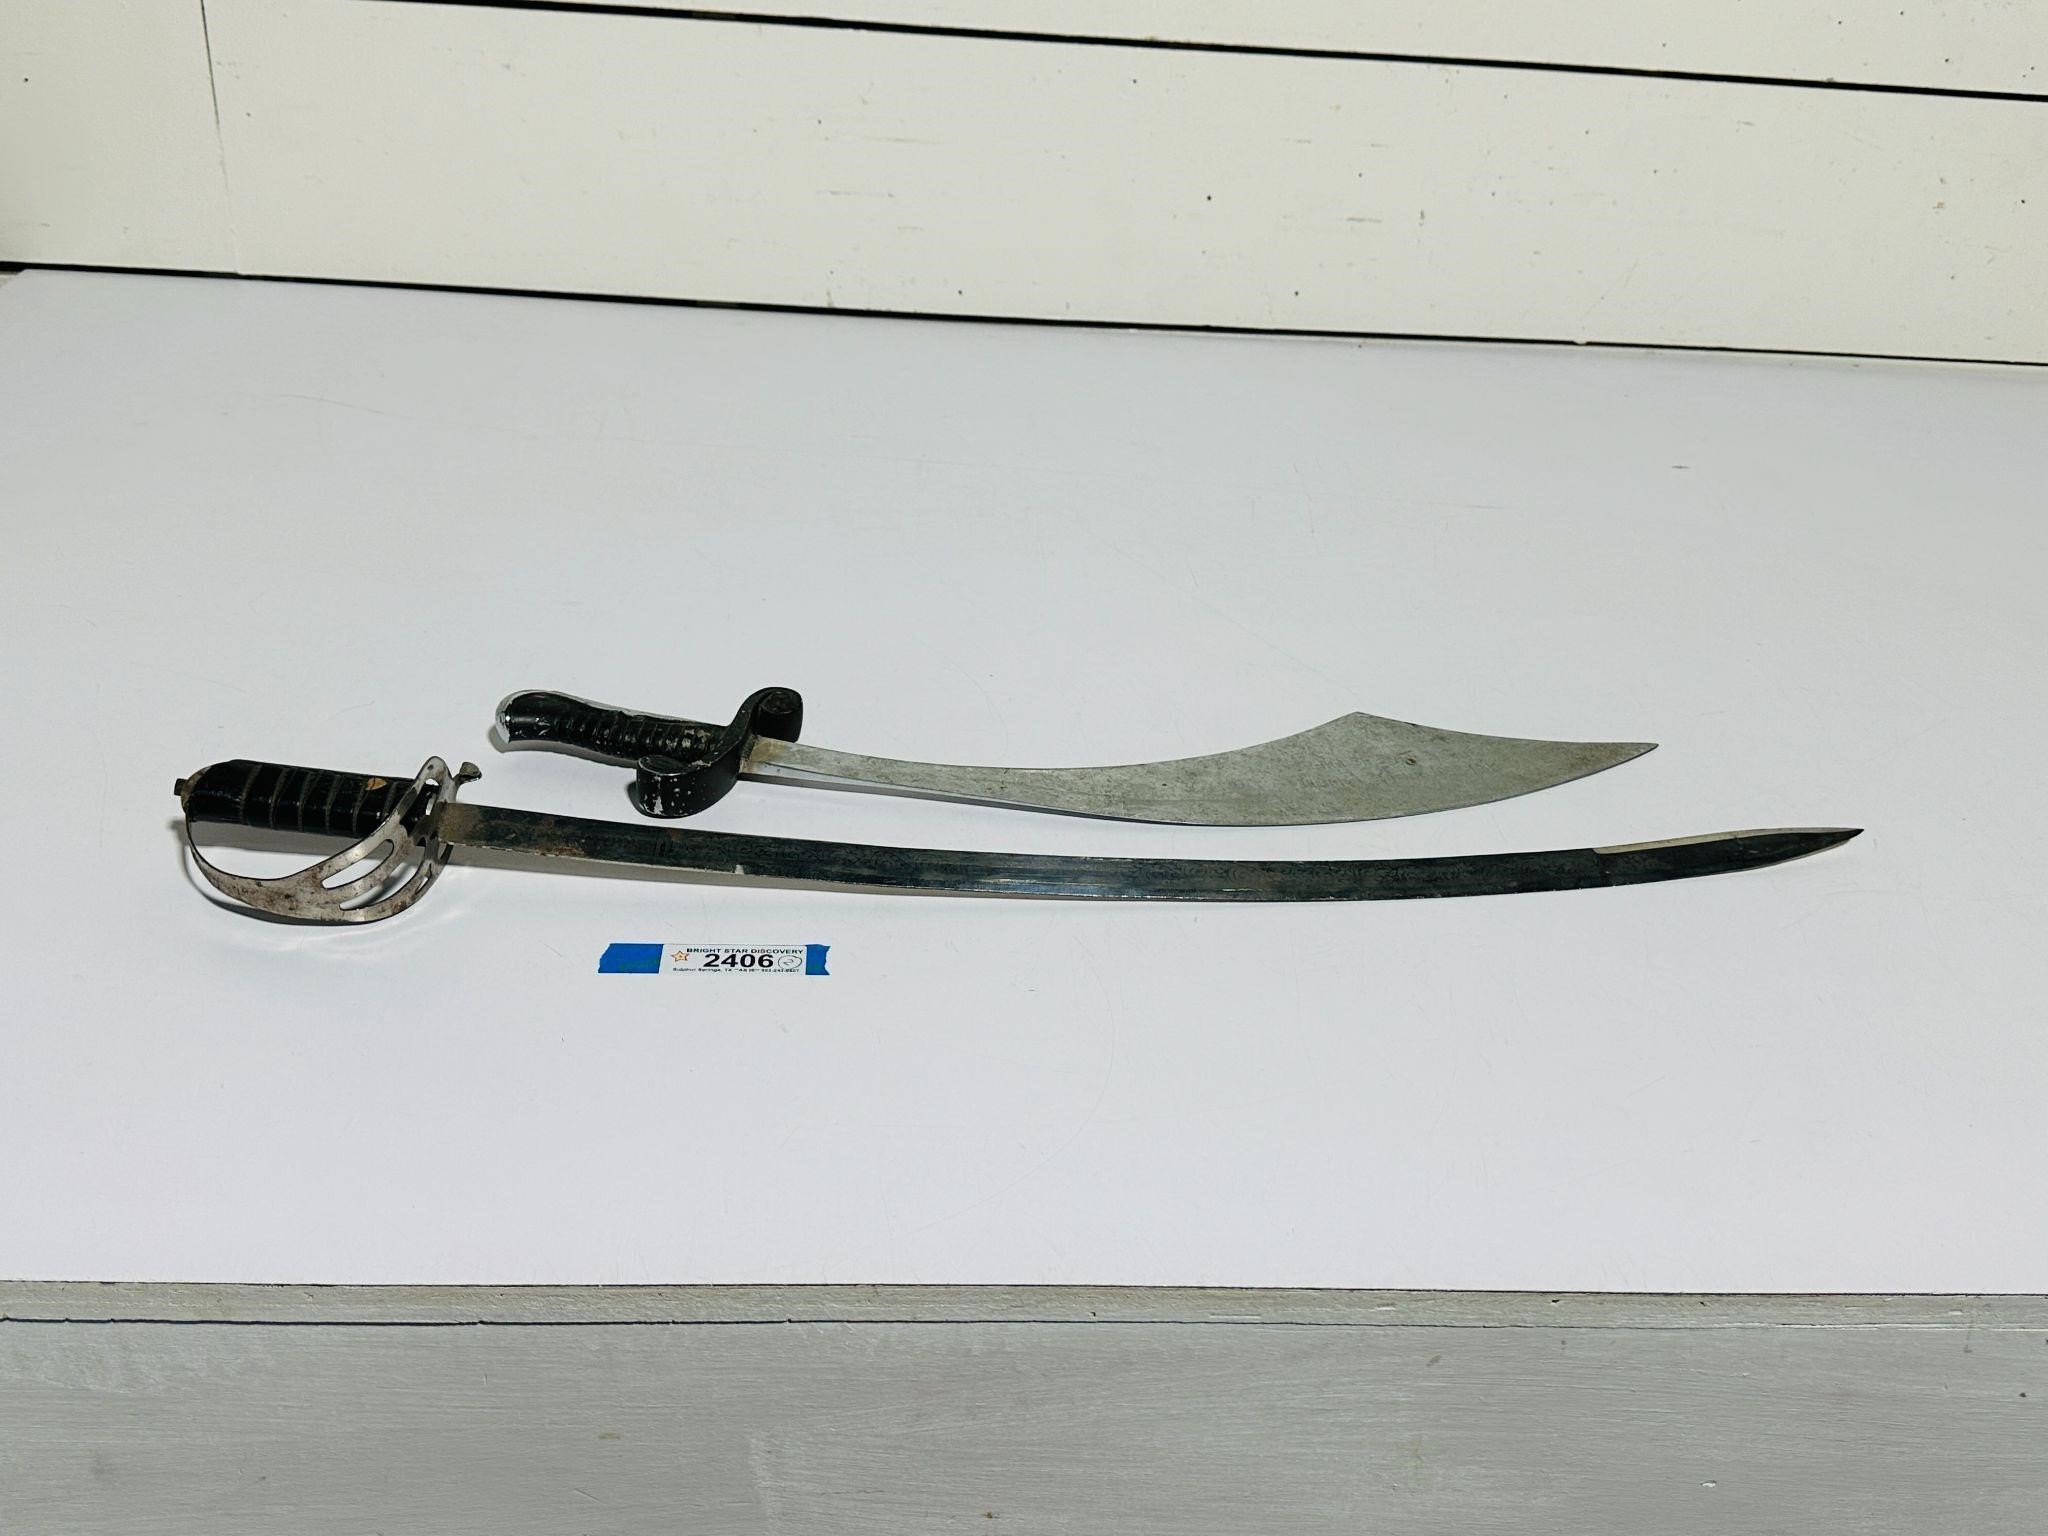 (2) Swords